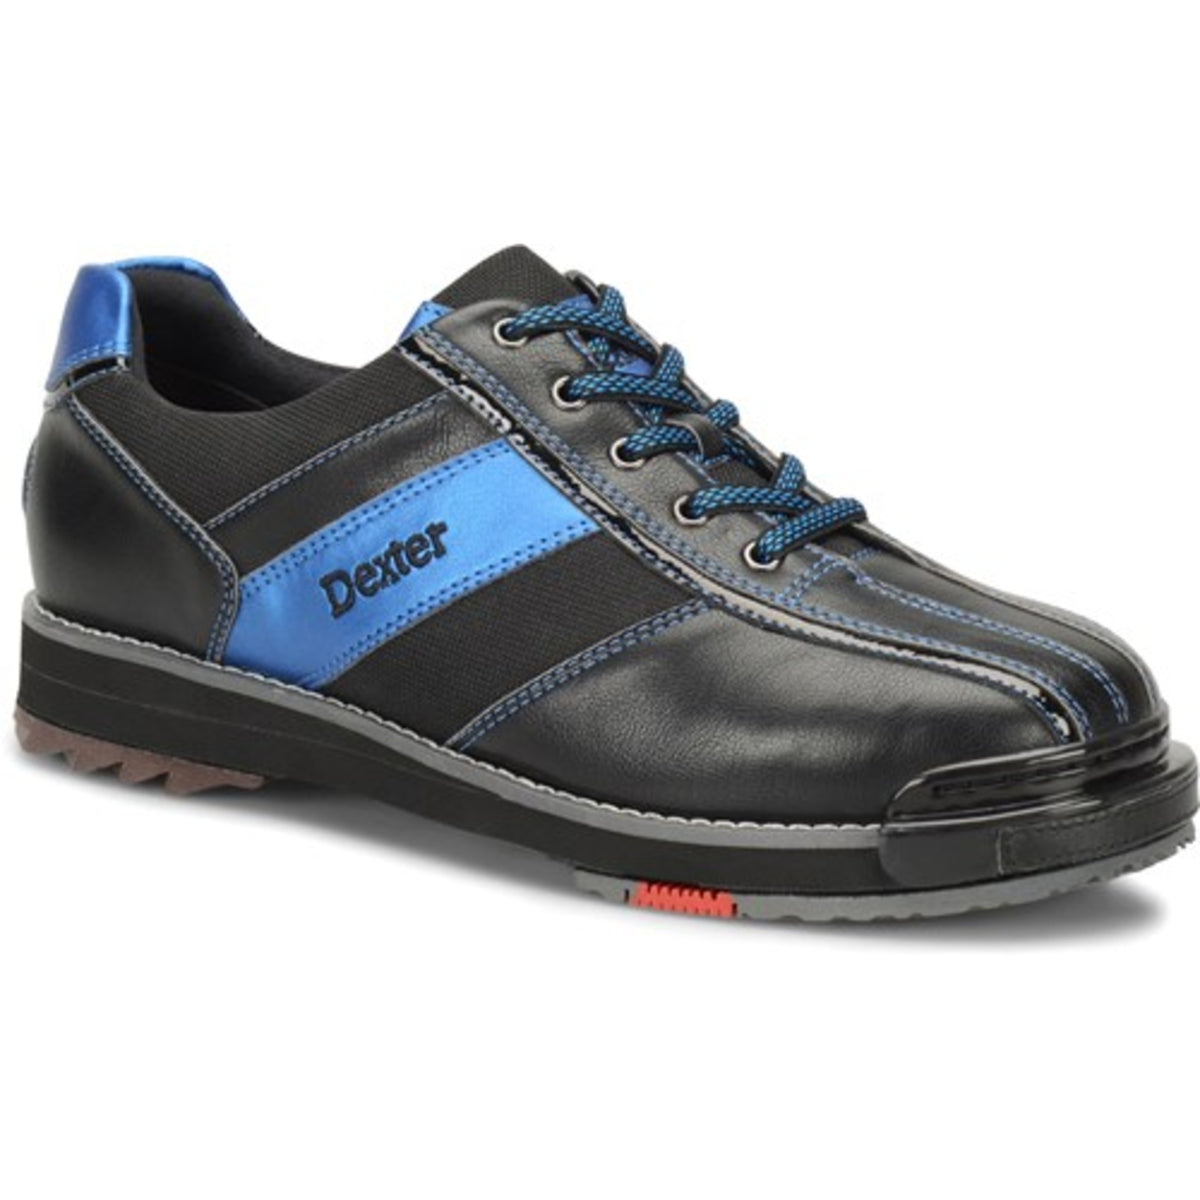 Sst 8 Pro Black/ Blue Shoes